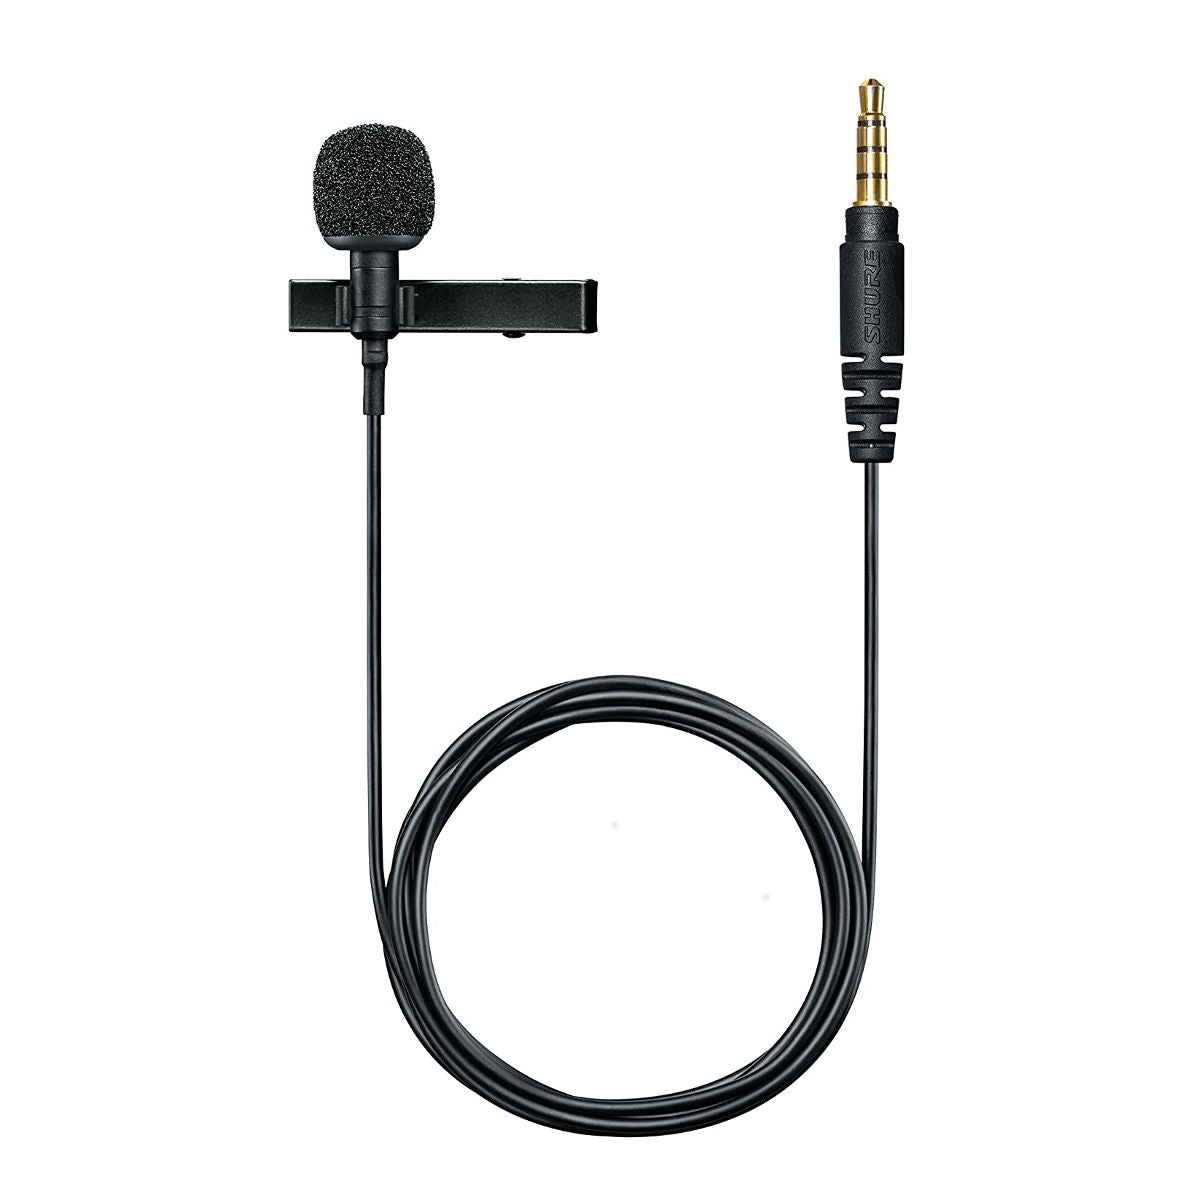 Shure: Microphones, Wireless microphones, in-ear monitoring, earphones,  headphones